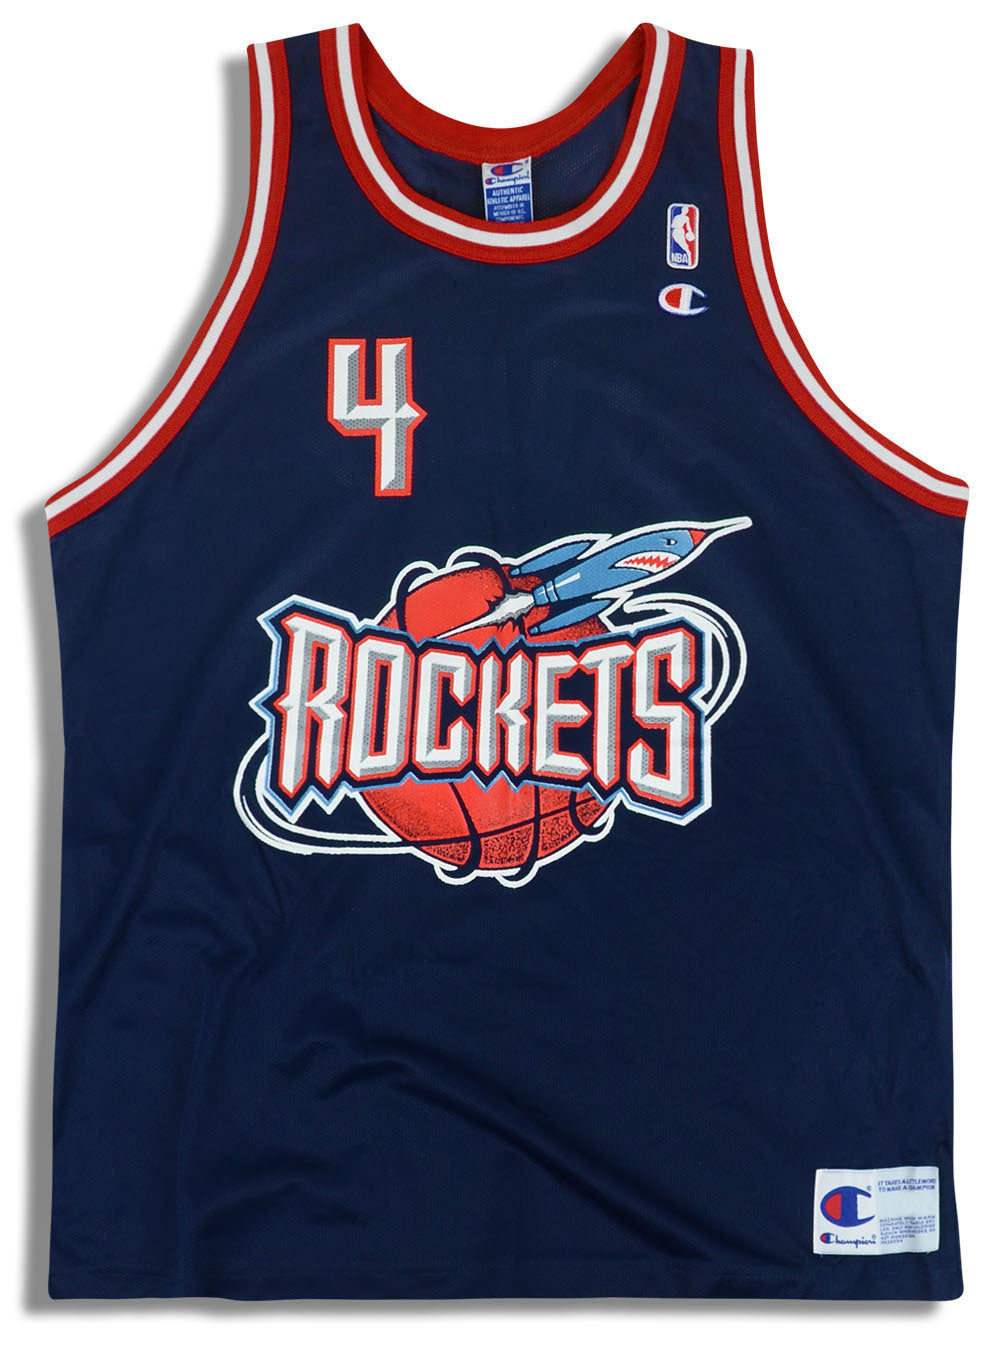 1996 rockets jersey